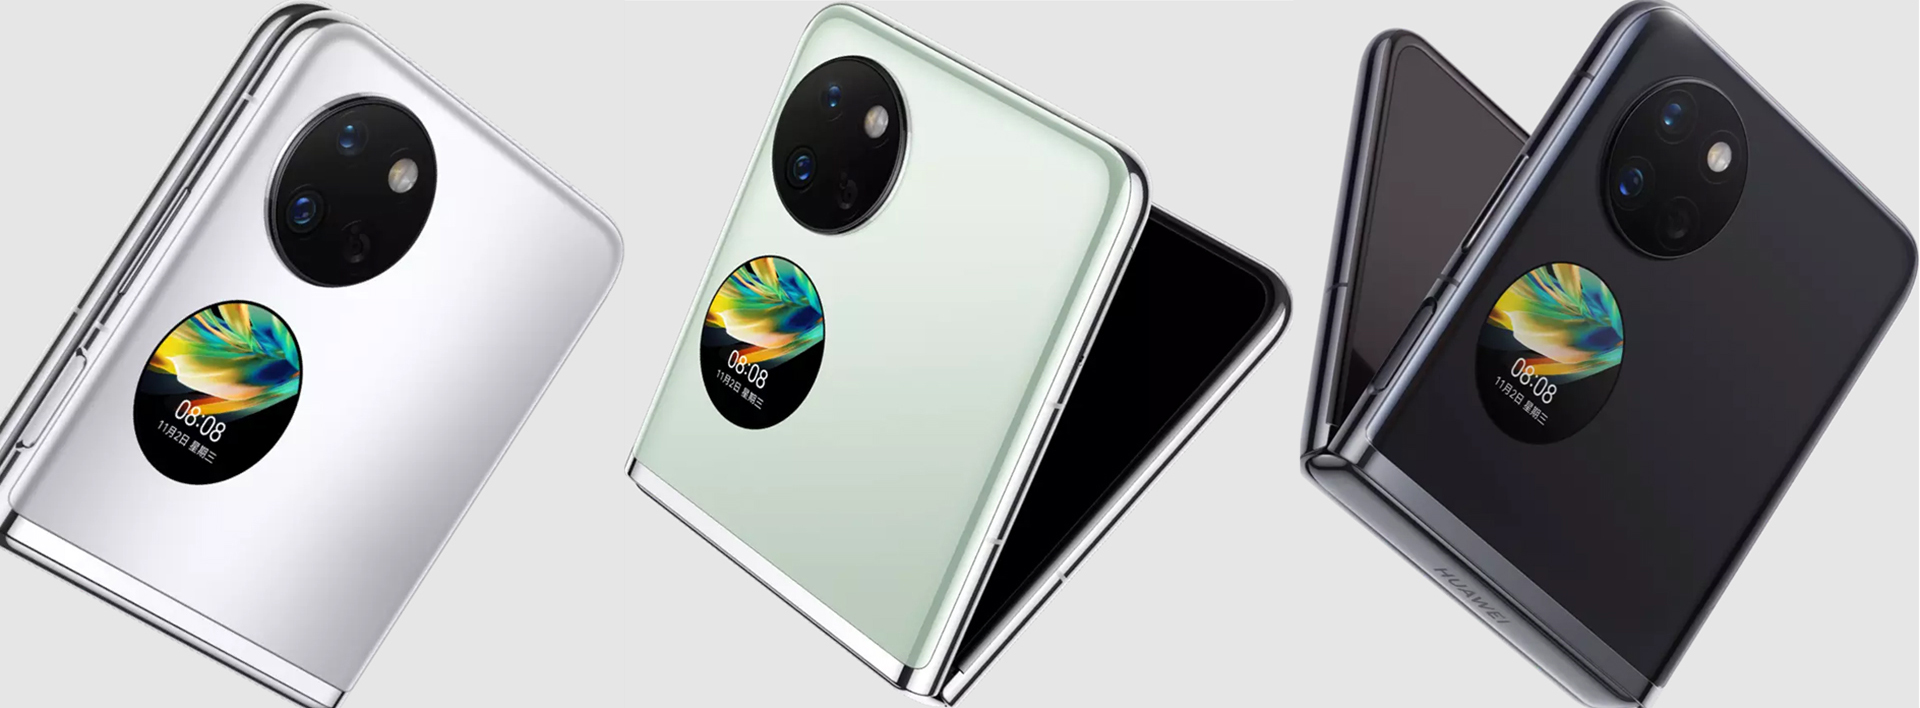 هواوی Pocket S در رنگ های مختلف